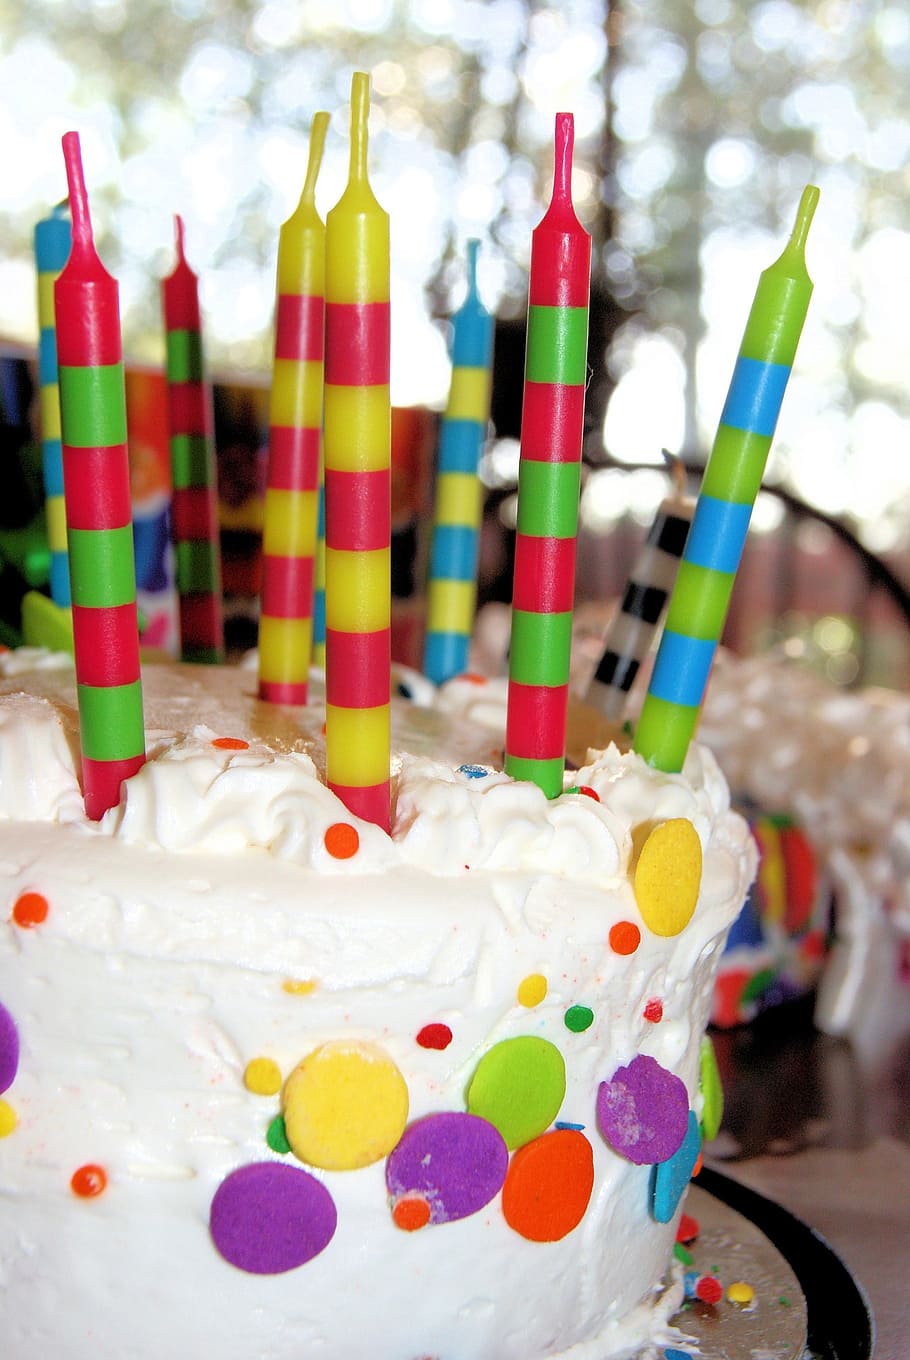 ラウンド, 白, アイシングで覆われたアイシング, 色とりどりのキャンドル, ケーキ, 誕生日, バニラ, アイシング, キャンドル, お祝い